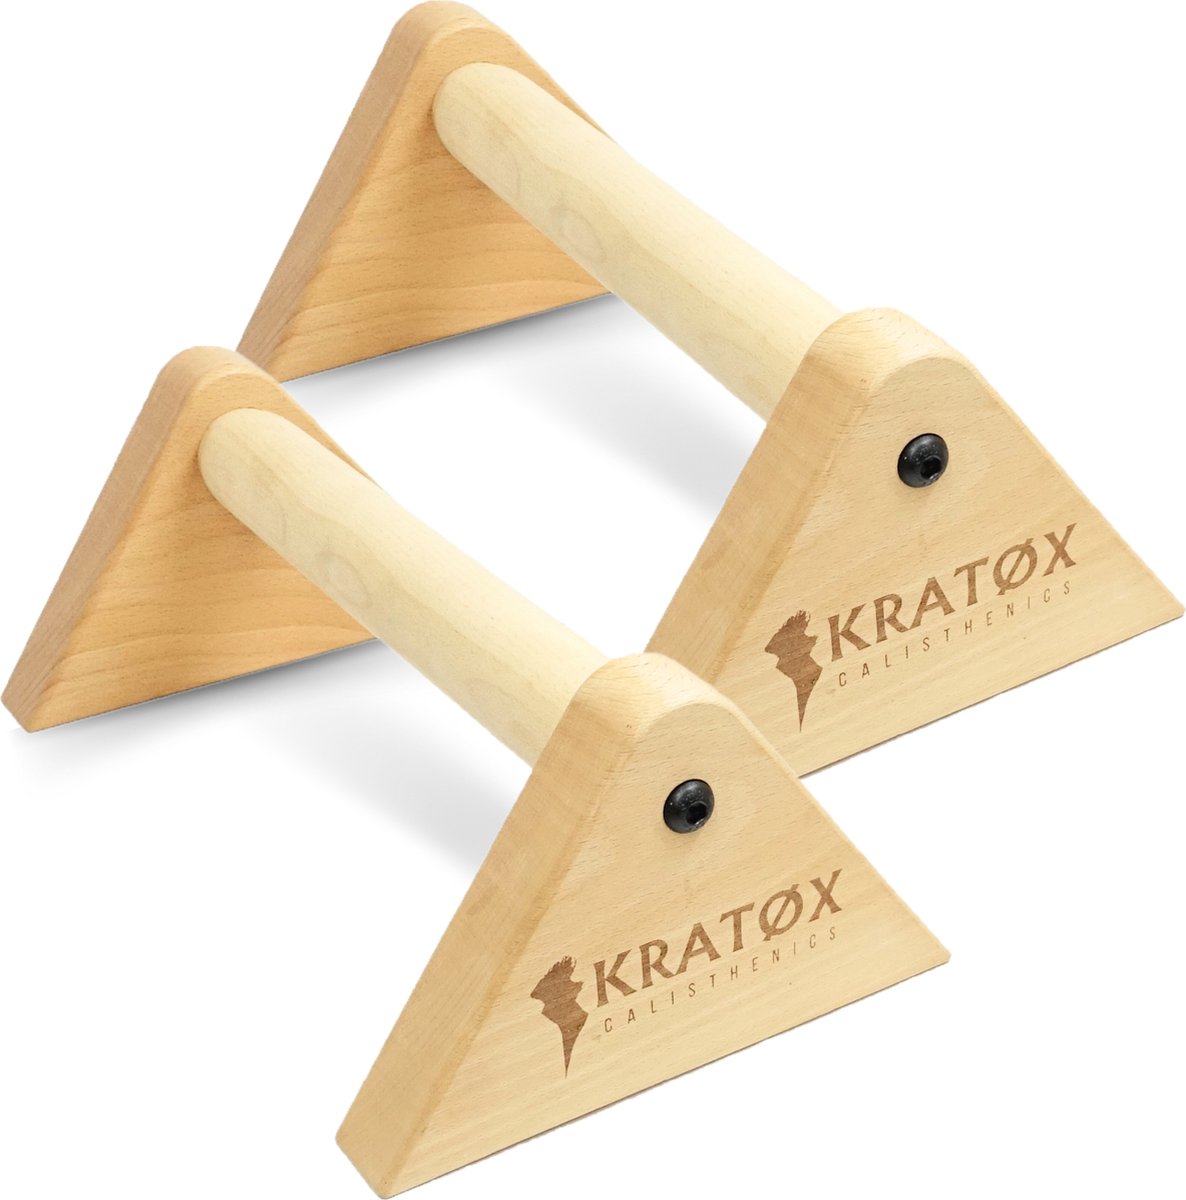 KRATØX Parallettes 30cm Push up Bars - Calisthenics - Push up grips - parallettes hout - Opdruksteunen - Opdruk steunen - Opdrukken - Dip bars - Fitness - Crossfit - KRATØX